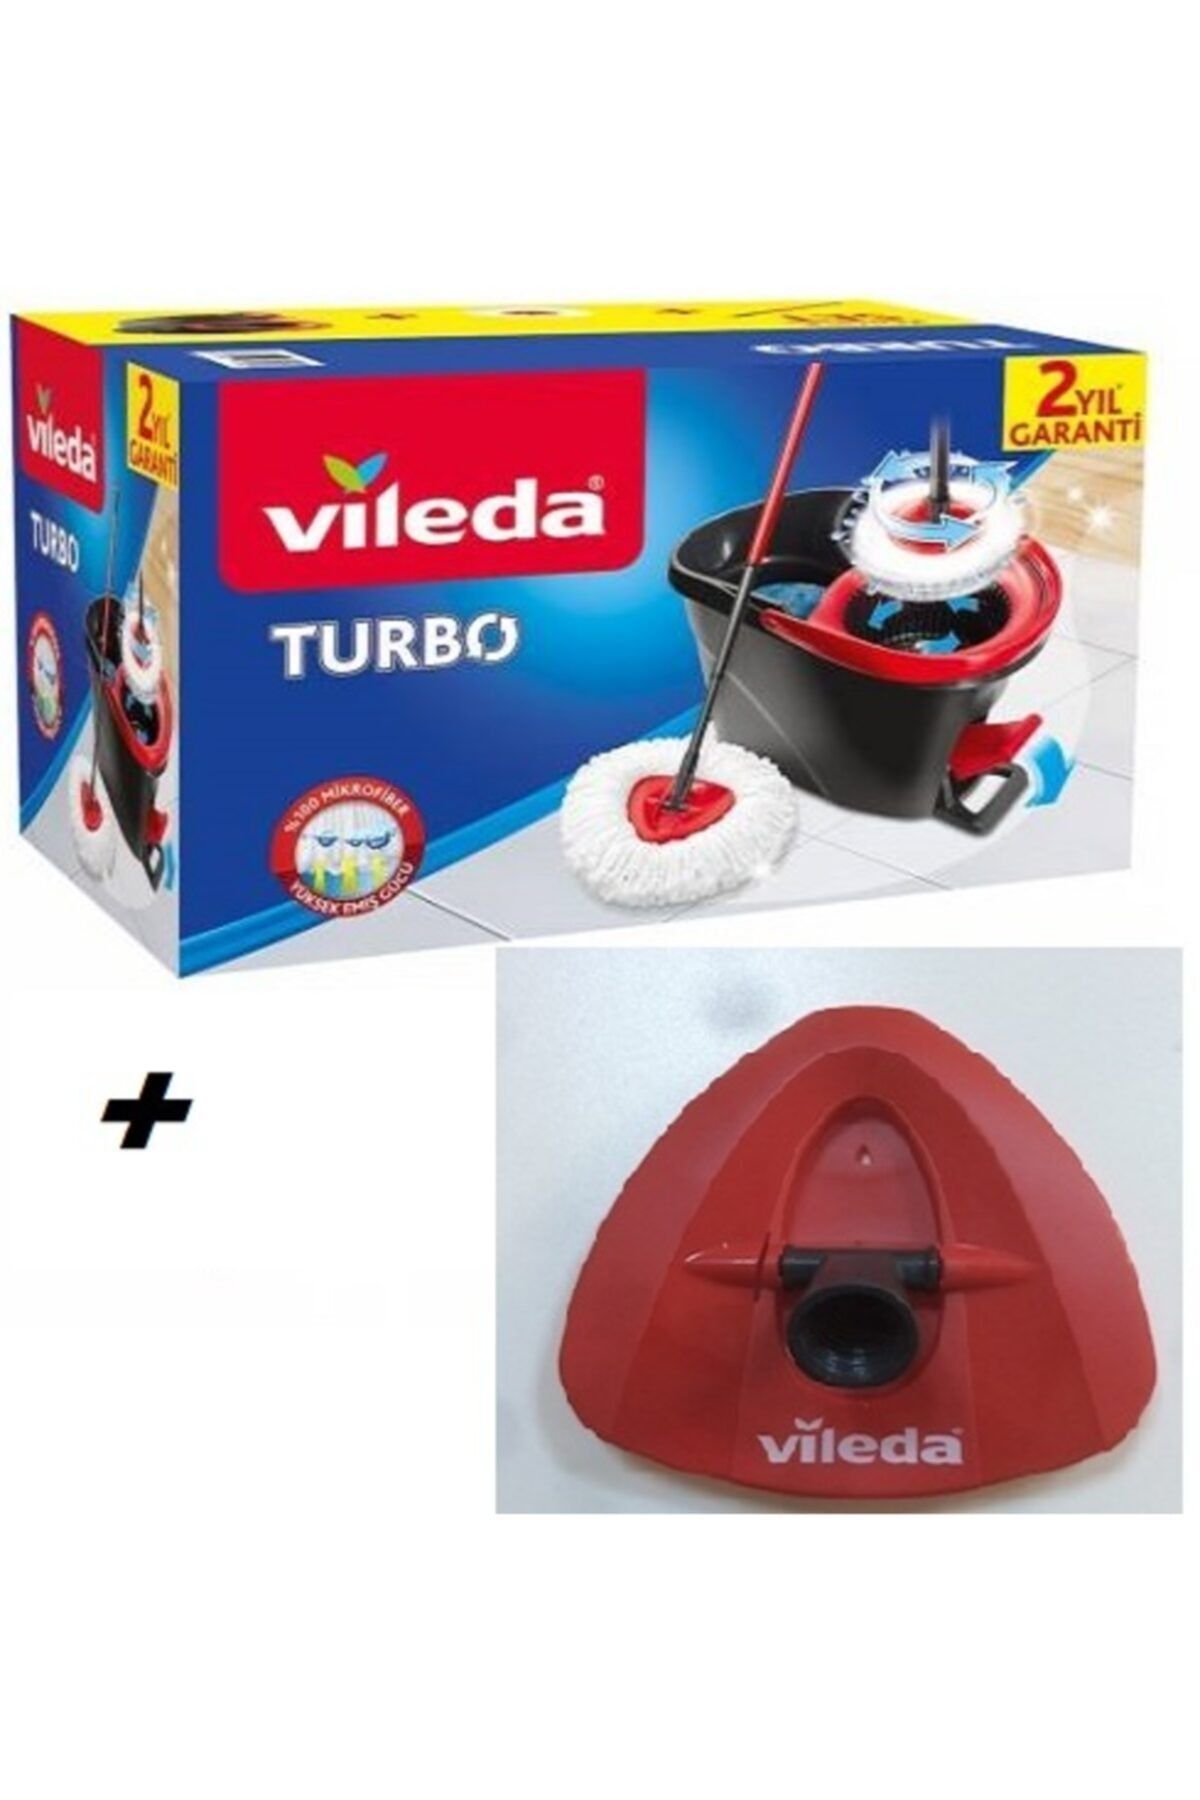 Vileda Turbo Pedallı Temizilik Set Takımı + Üçgen Aparat